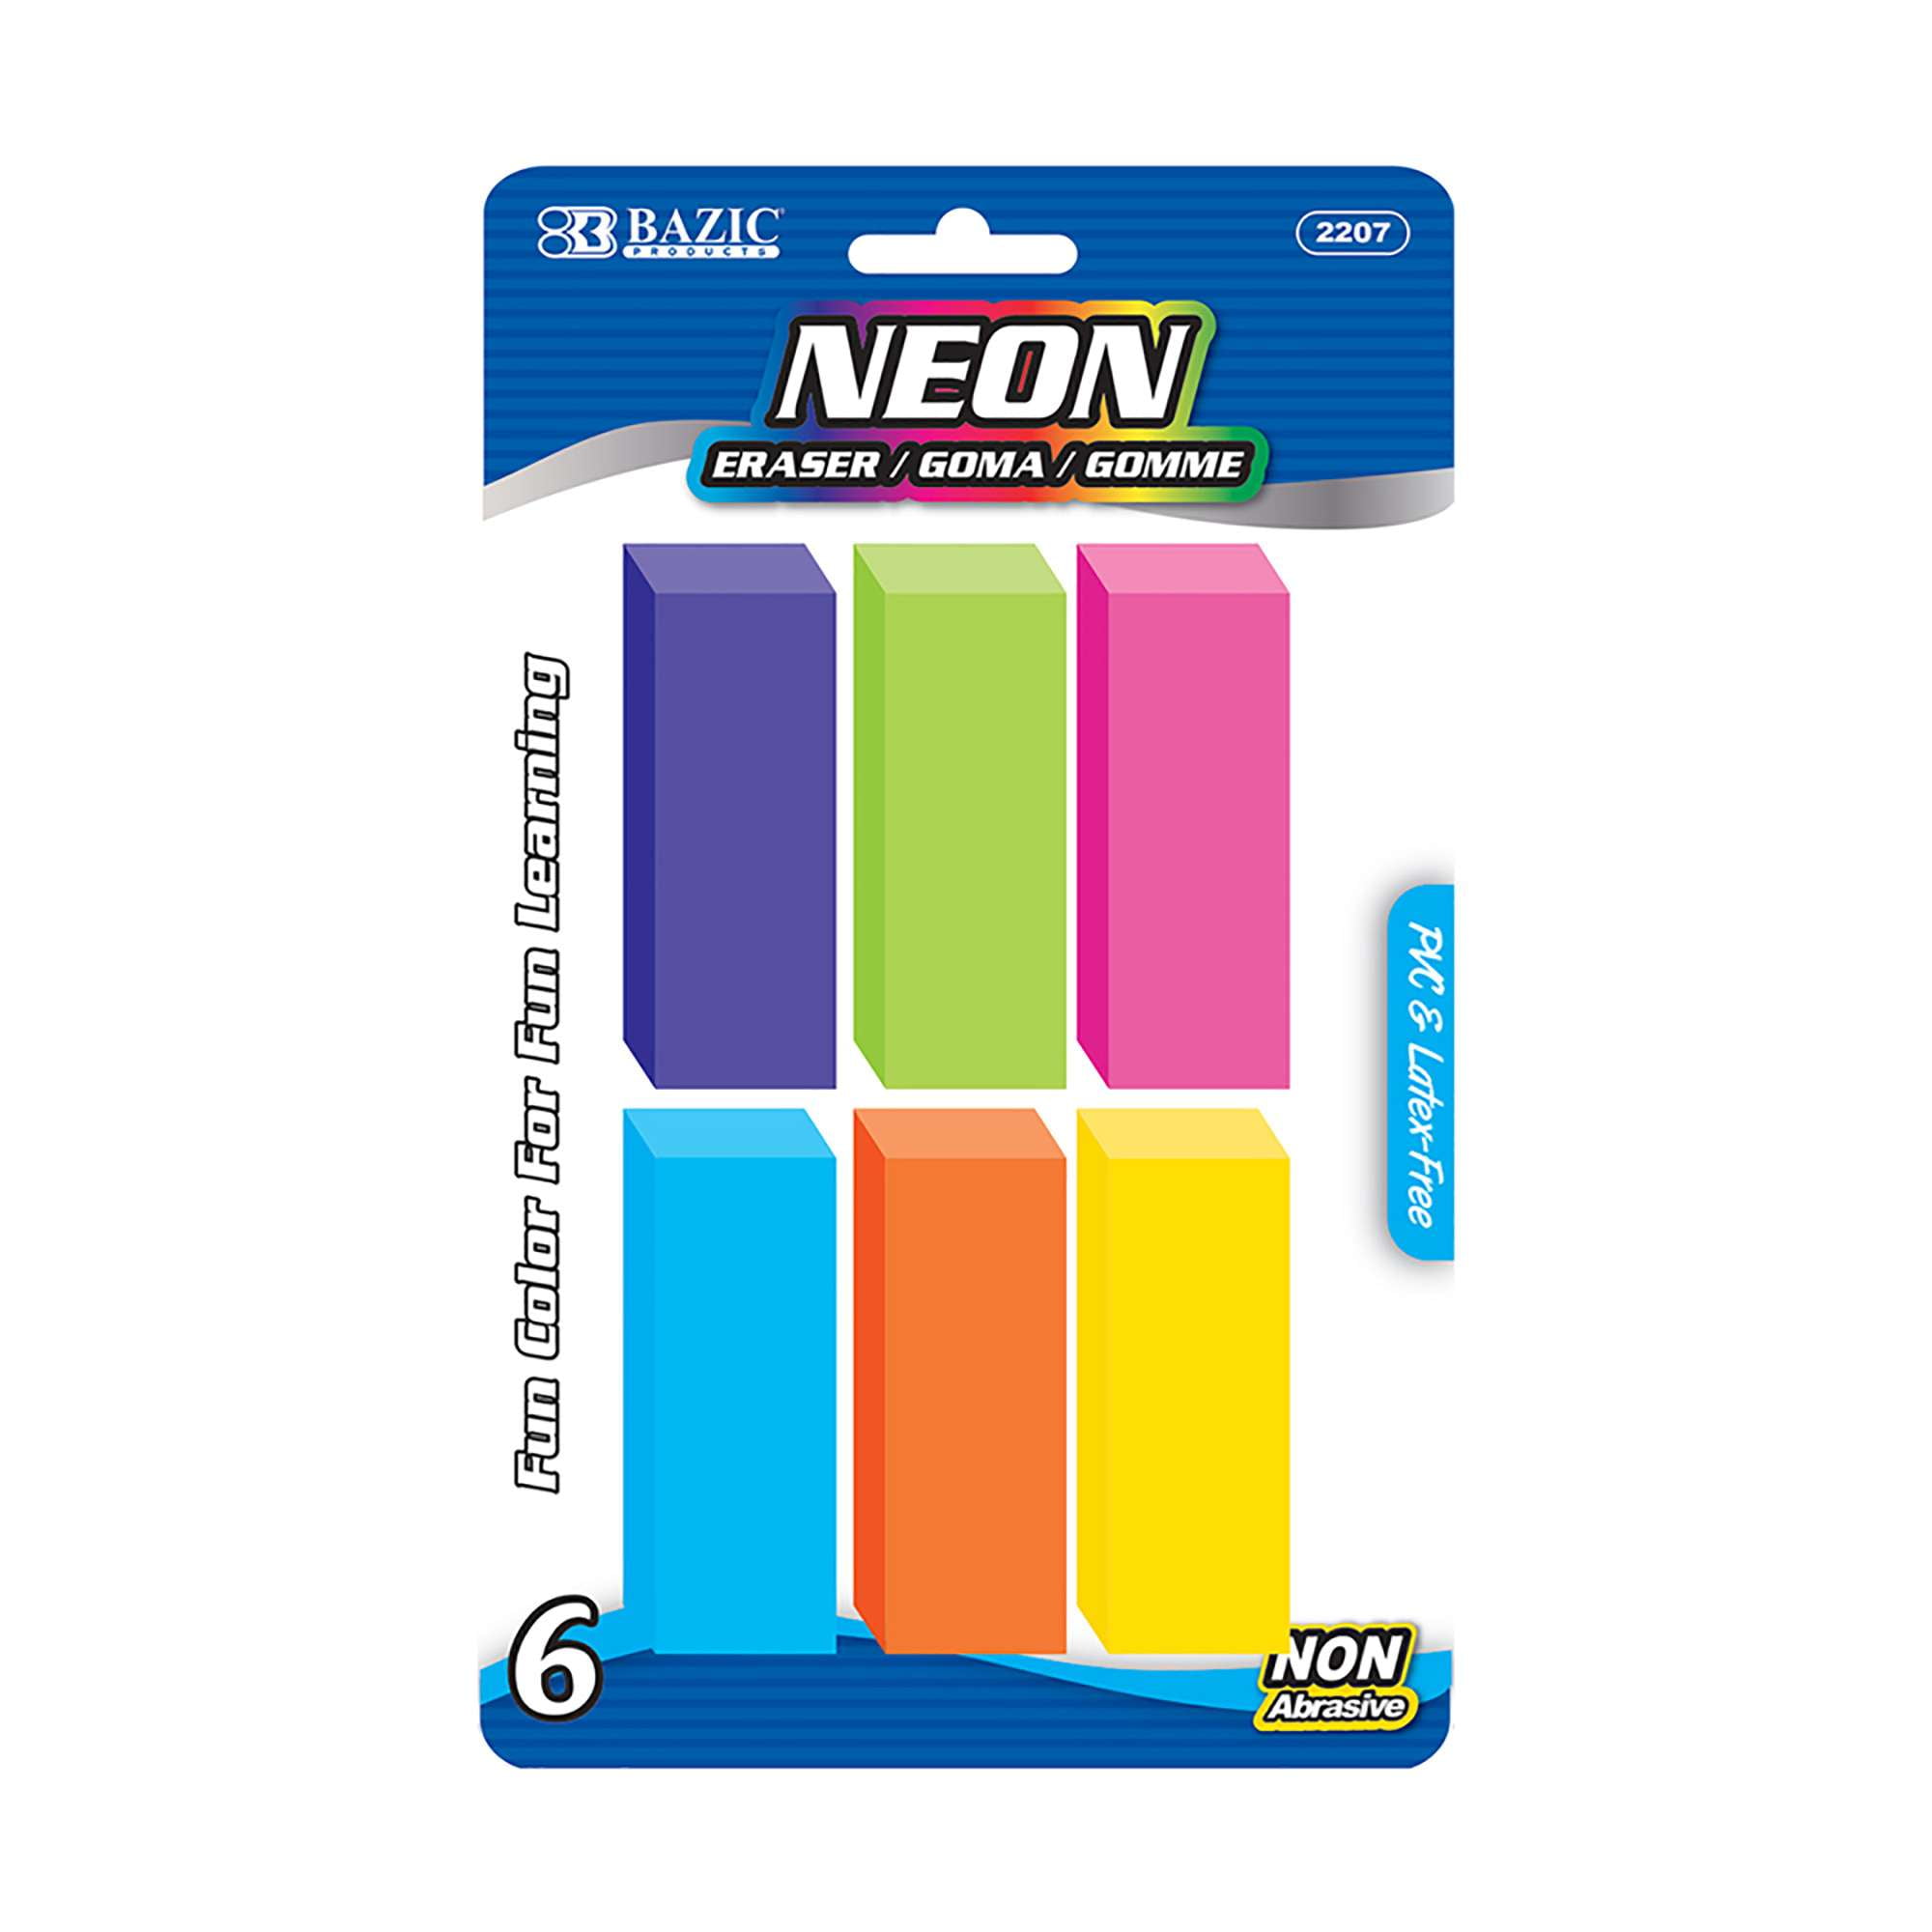 BAZIC Neon Eraser Sets Eraser 2234 